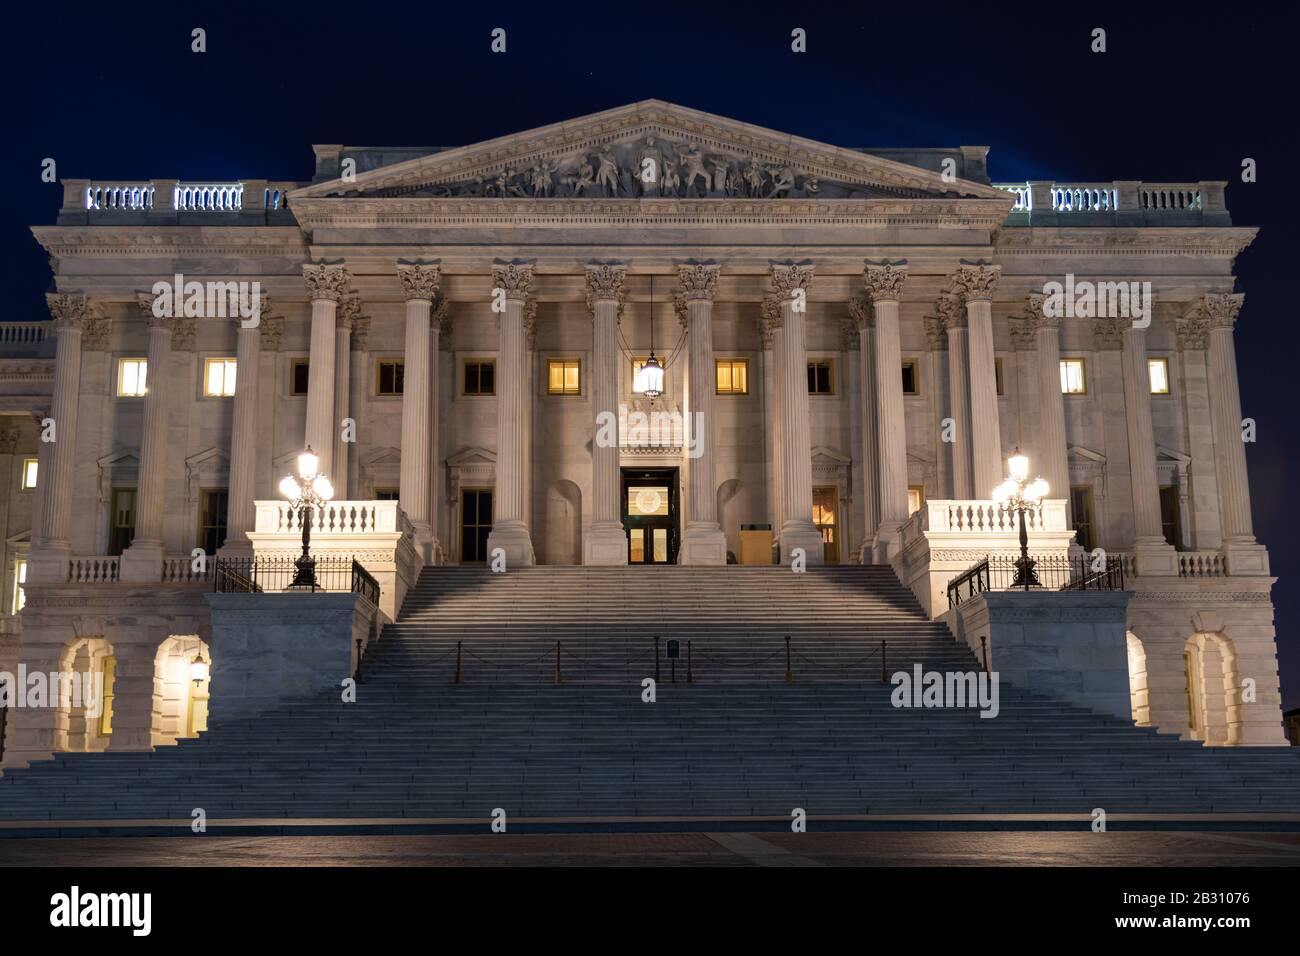 Eingang zur US-Senatskammer im US-Kapitolgebäude, nachts zu sehen. Stockfoto